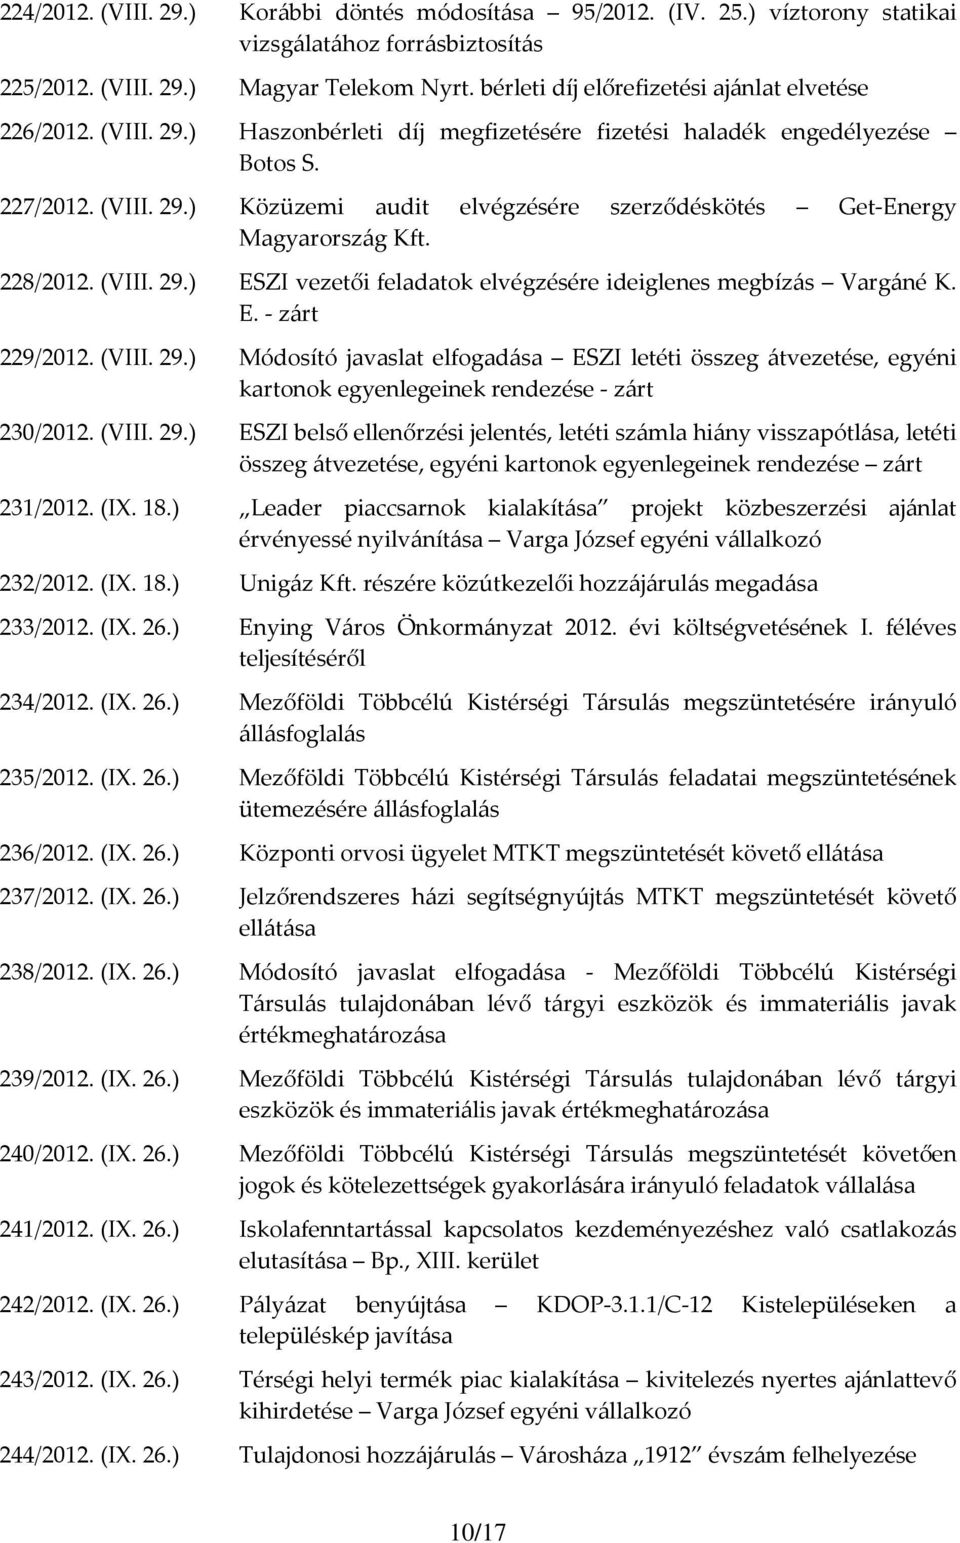 228/2012. (VIII. 29.) ESZI vezetői feladatok elvégzésére ideiglenes megbízás Vargáné K. E. - 229/2012. (VIII. 29.) Módosító javaslat elfogadása ESZI letéti összeg átvezetése, egyéni kartonok egyenlegeinek rendezése - 230/2012.